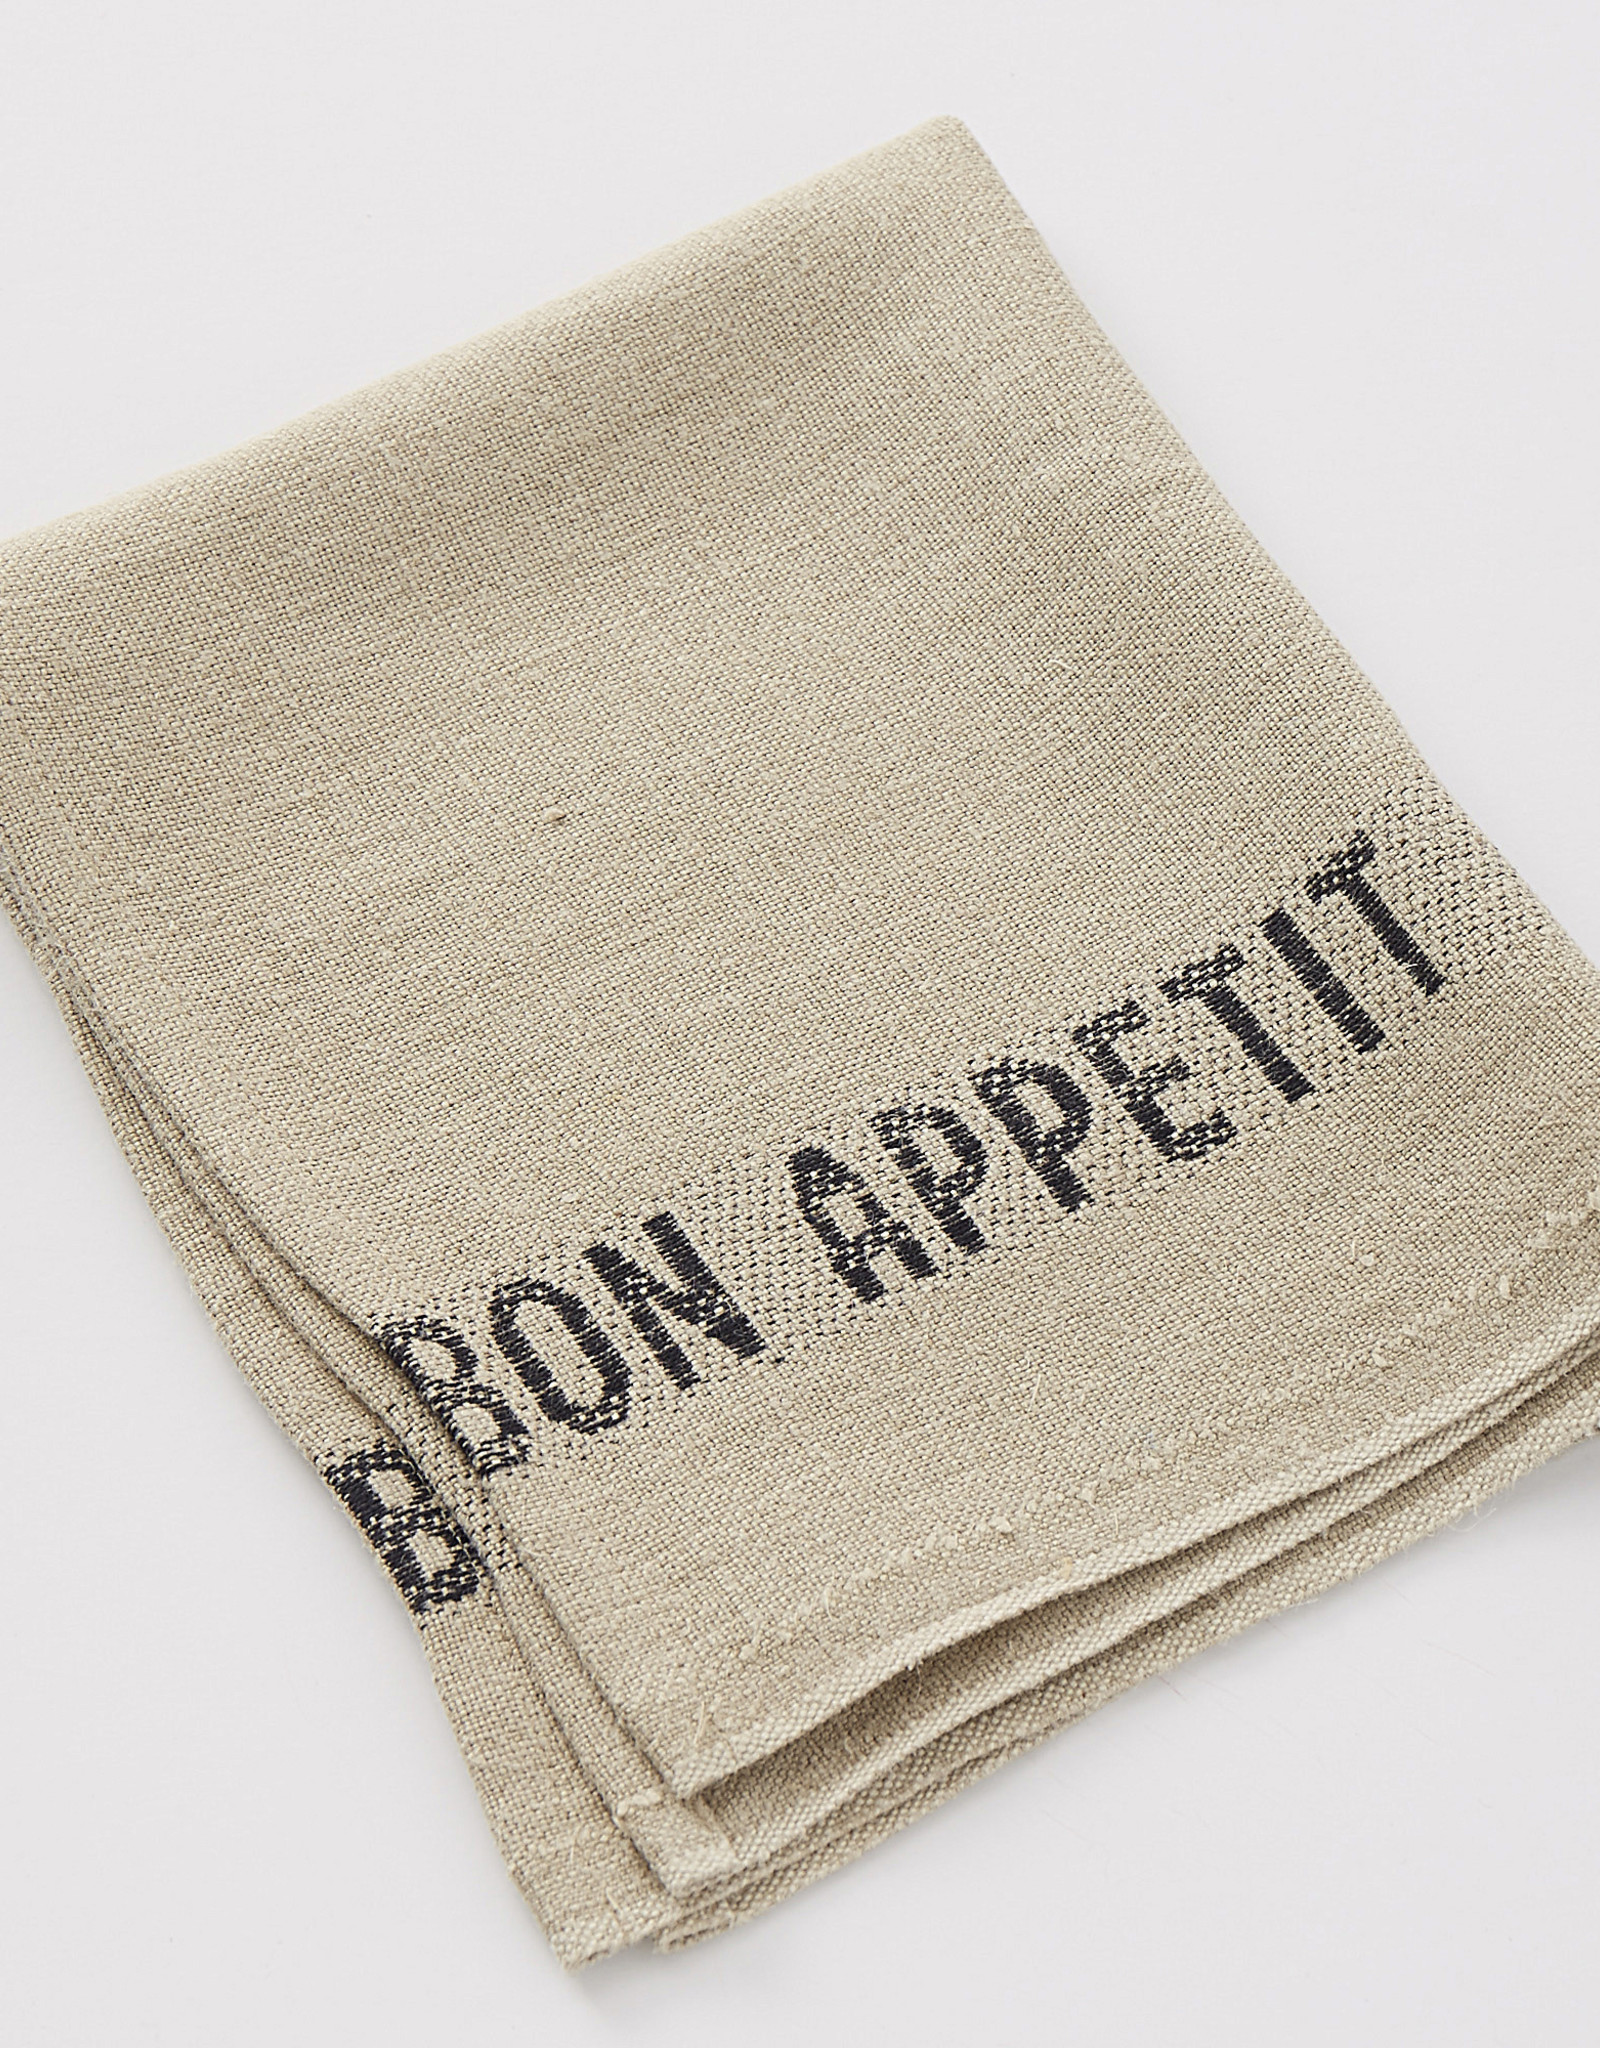 Charvet Editions Charvet Editions - Napkin/Placemat Bon Appetit Natural/Black 17"x13"